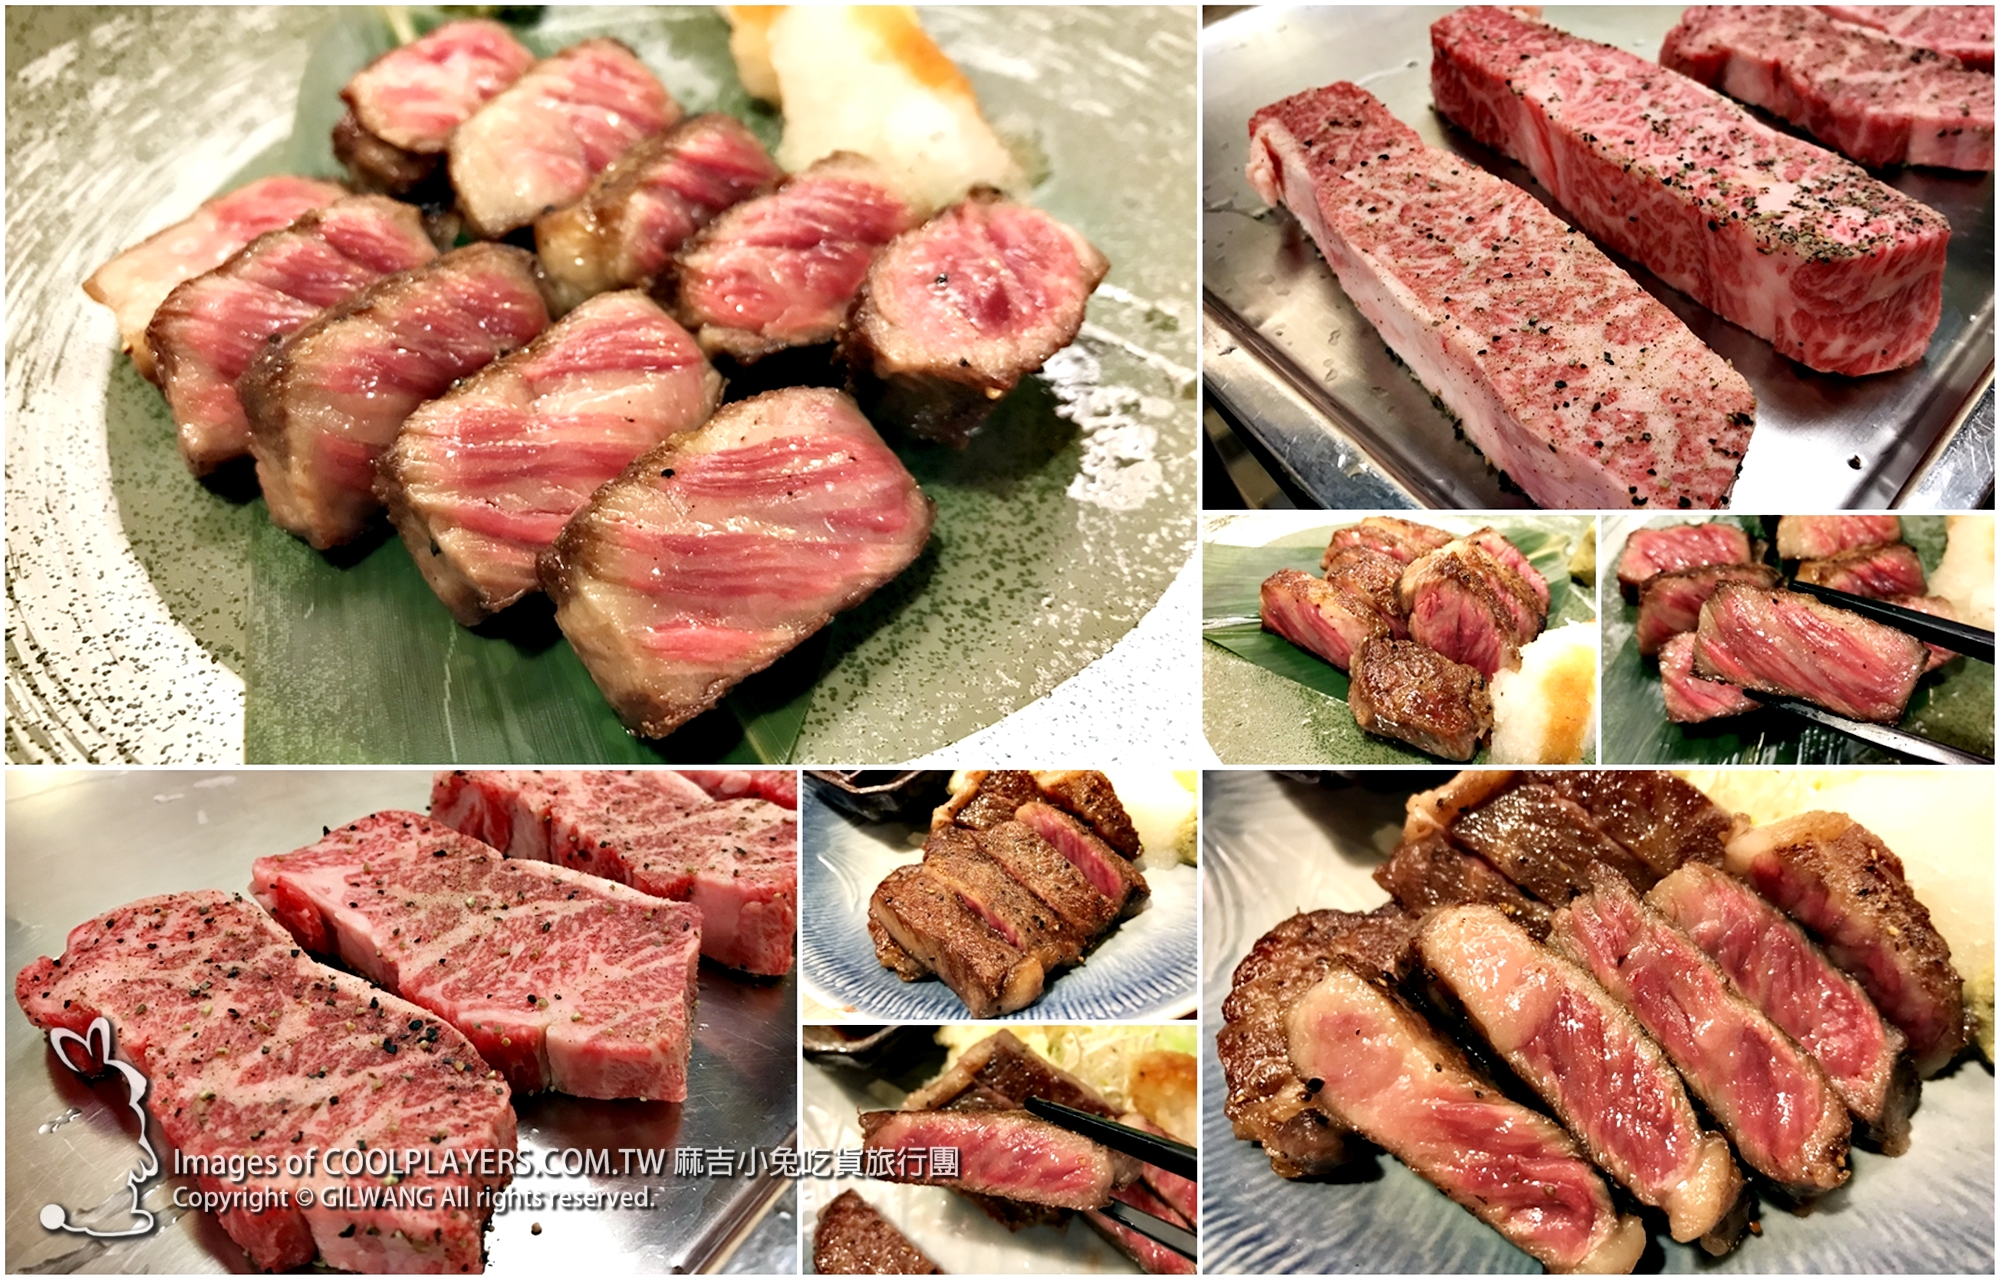 日本和牛開放【廣島縣產 A5 BMS 10 頂級黑毛和牛】小六食堂就能吃到超級美味 @麻吉小兔。世界行旅